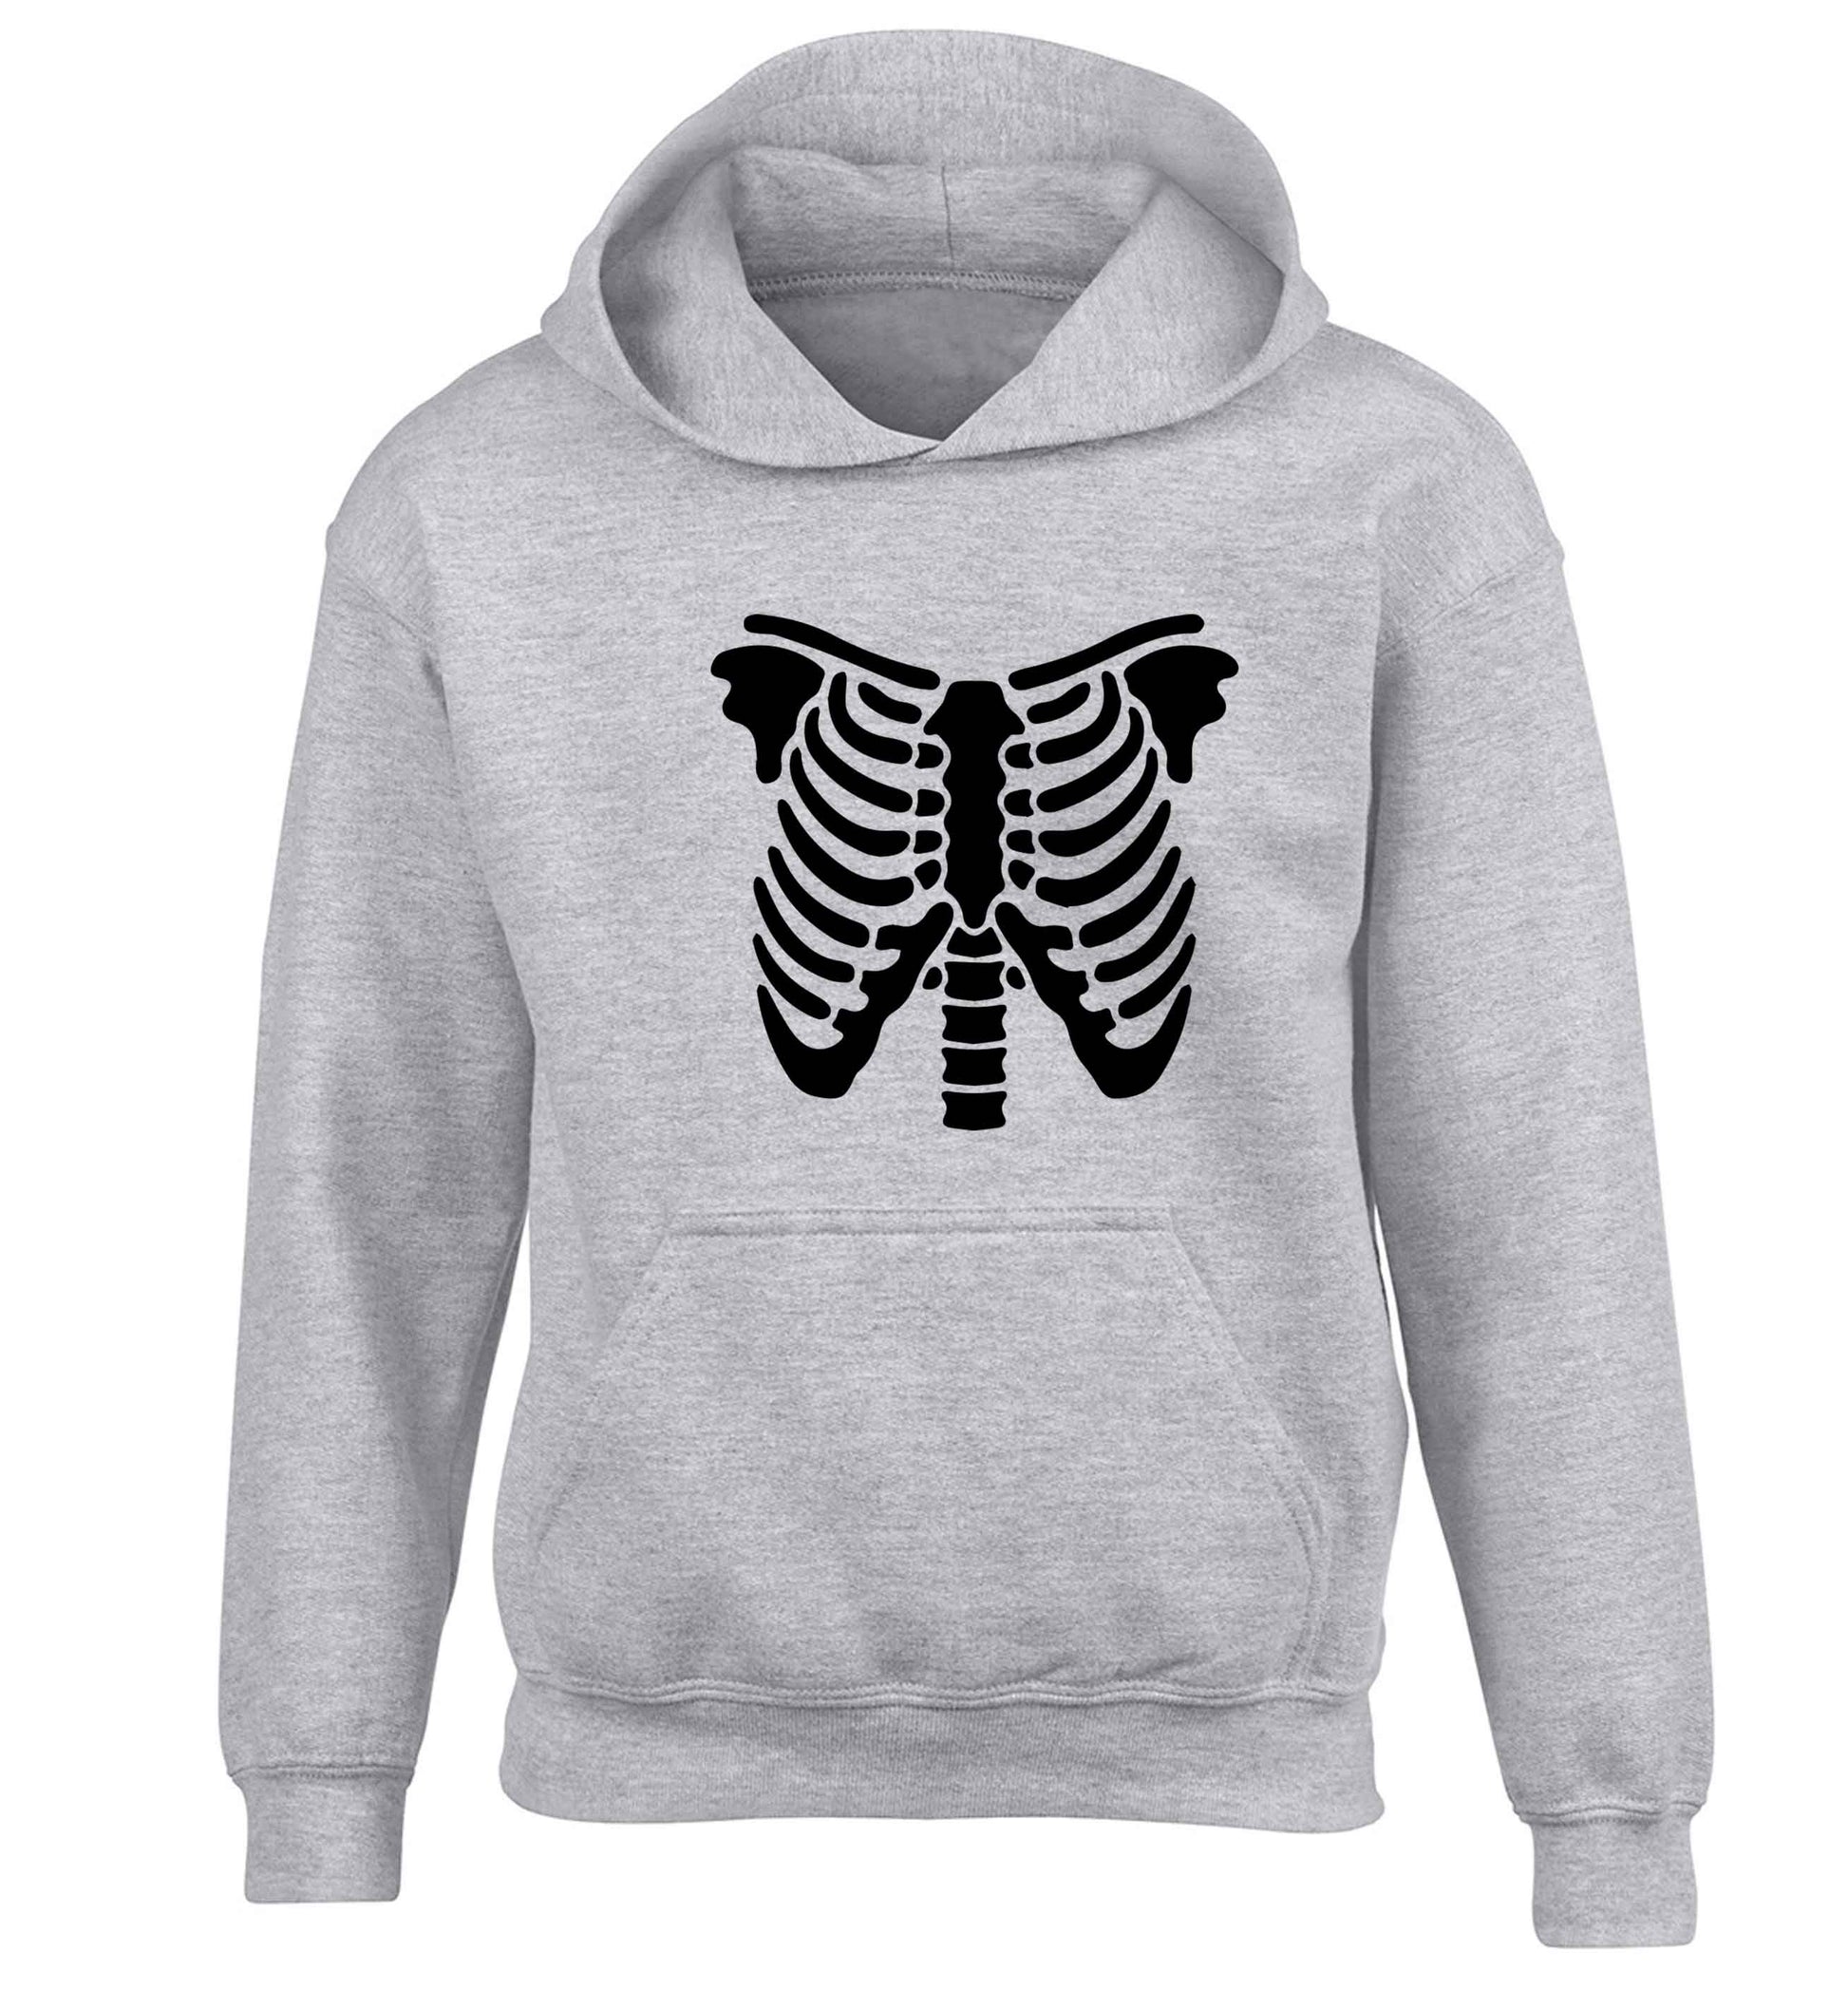 Skeleton ribcage children's grey hoodie 12-13 Years